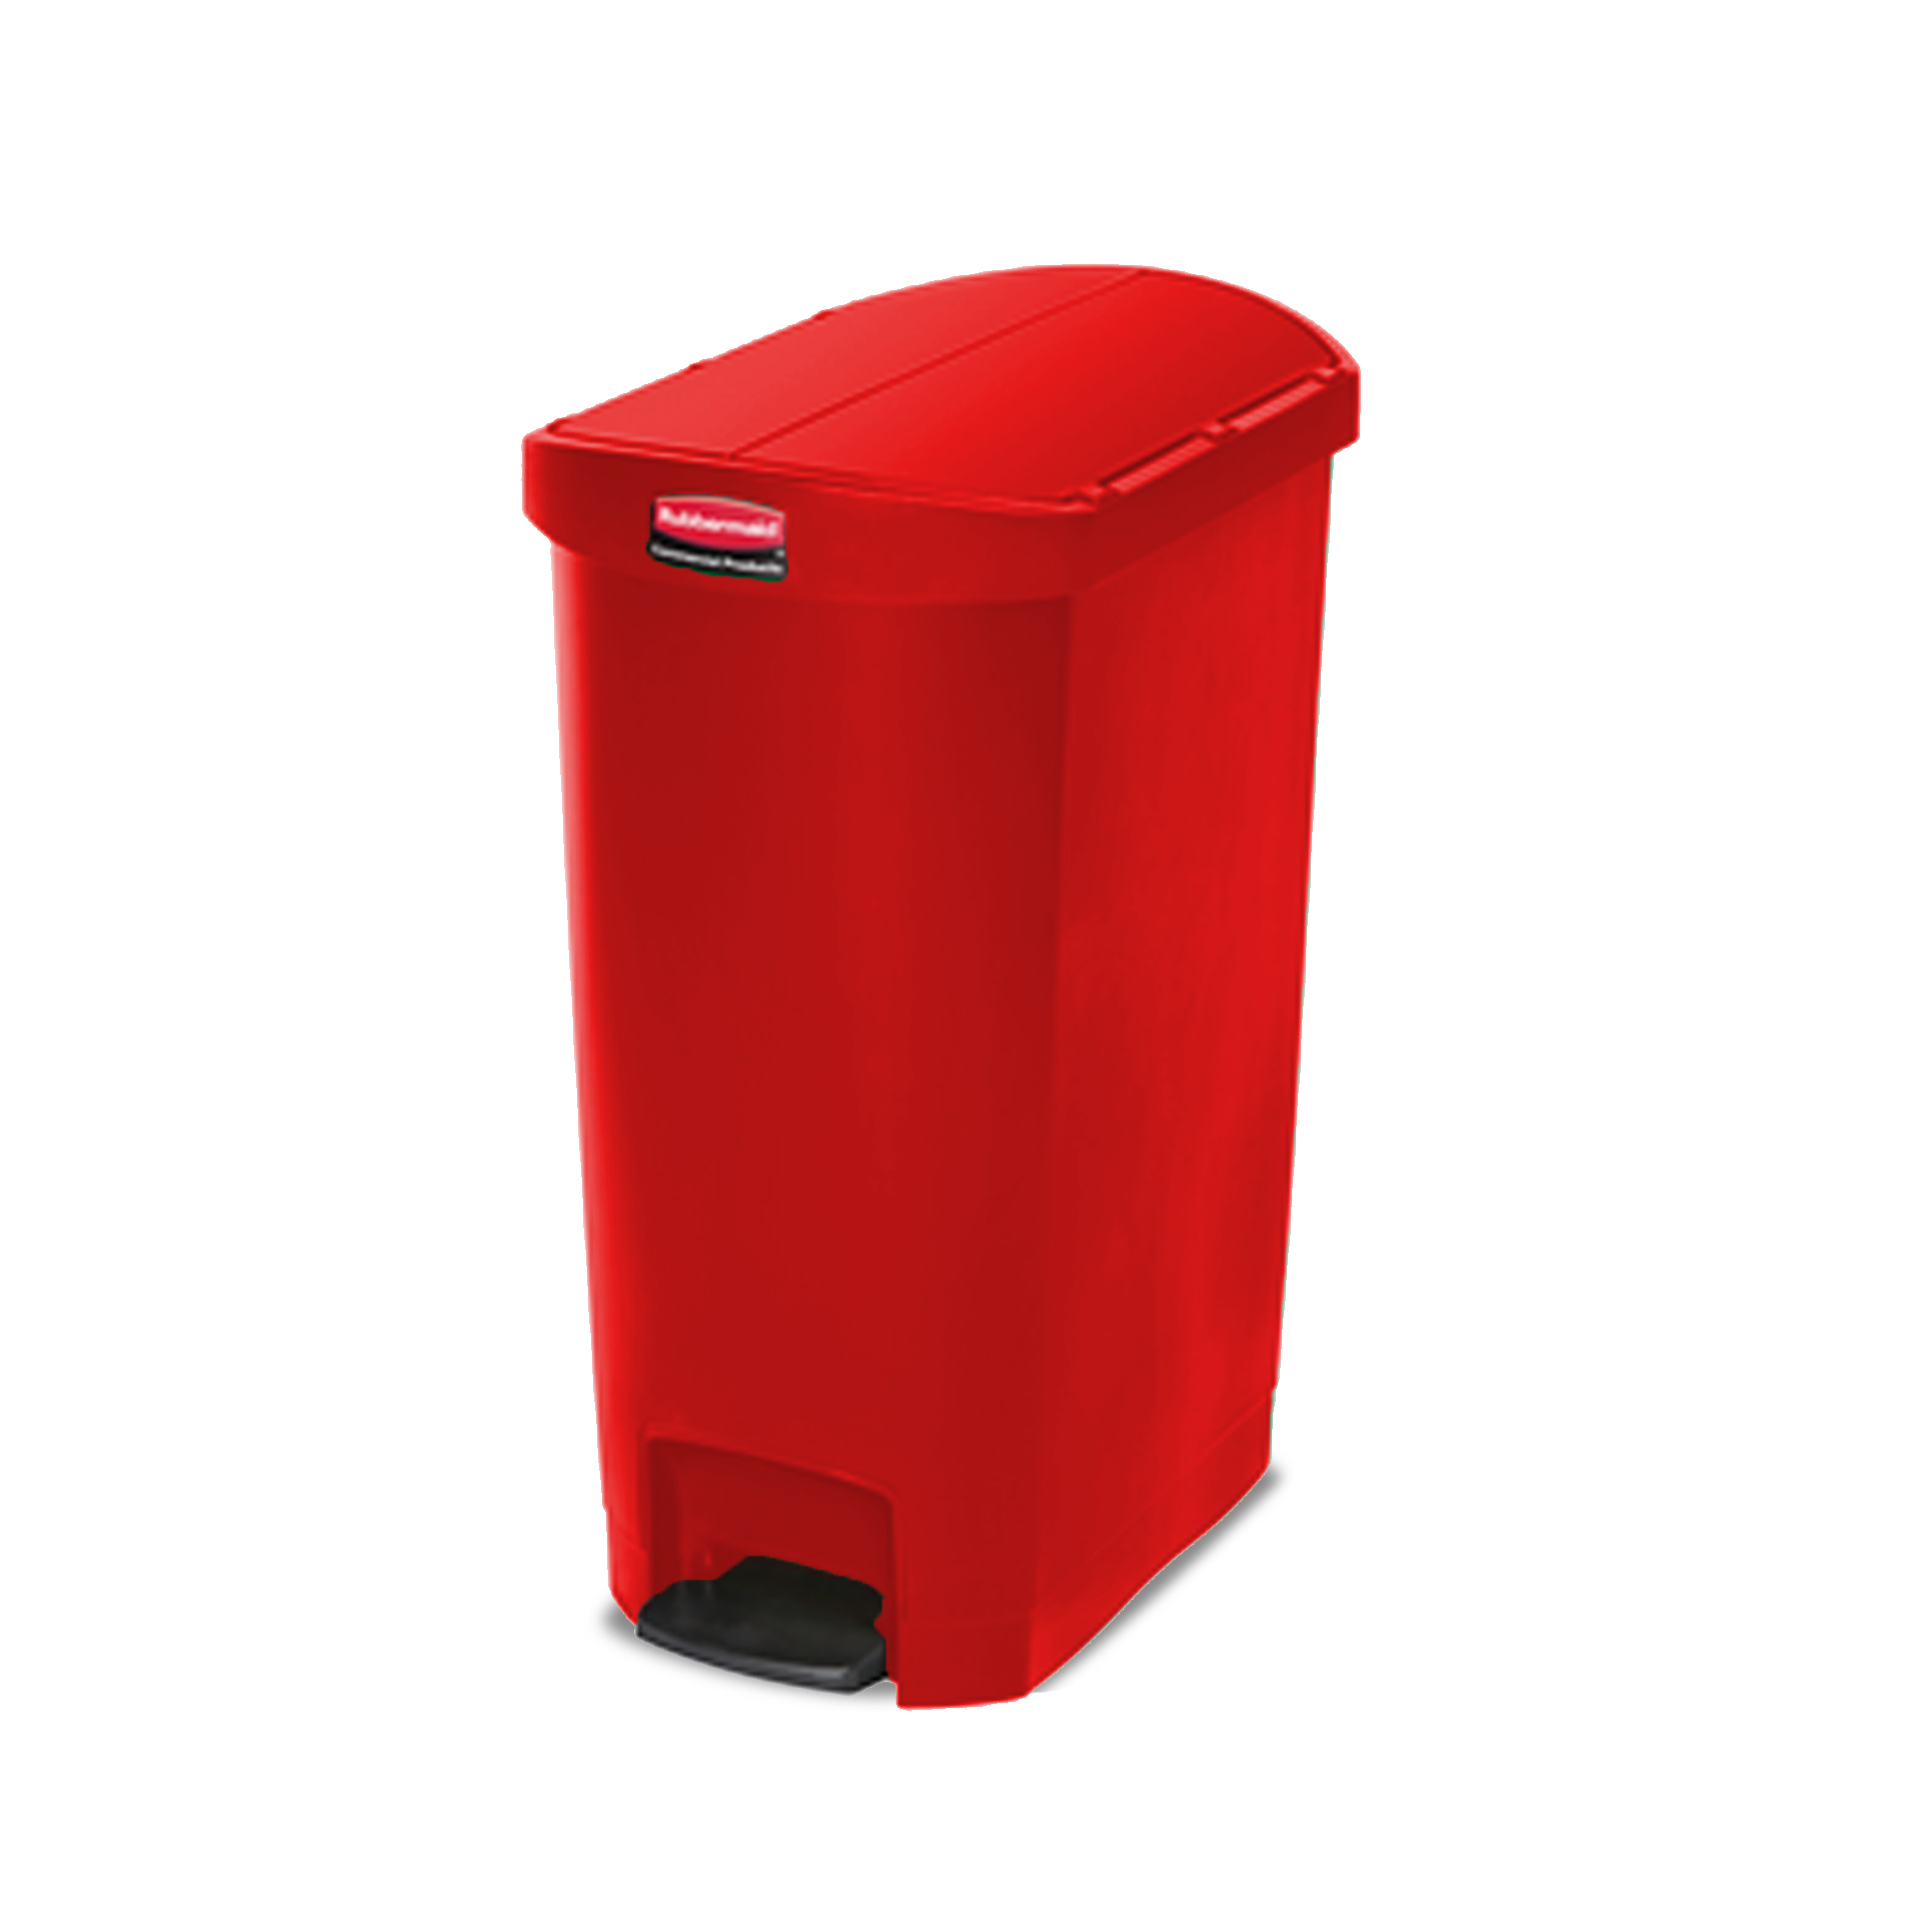 ถังขยะแบบเท้าเหยียบ ฝาถังเปิด 2 ด้าน Slim Jim® Step-On Container ขนาด 50 ลิตร สีแดง